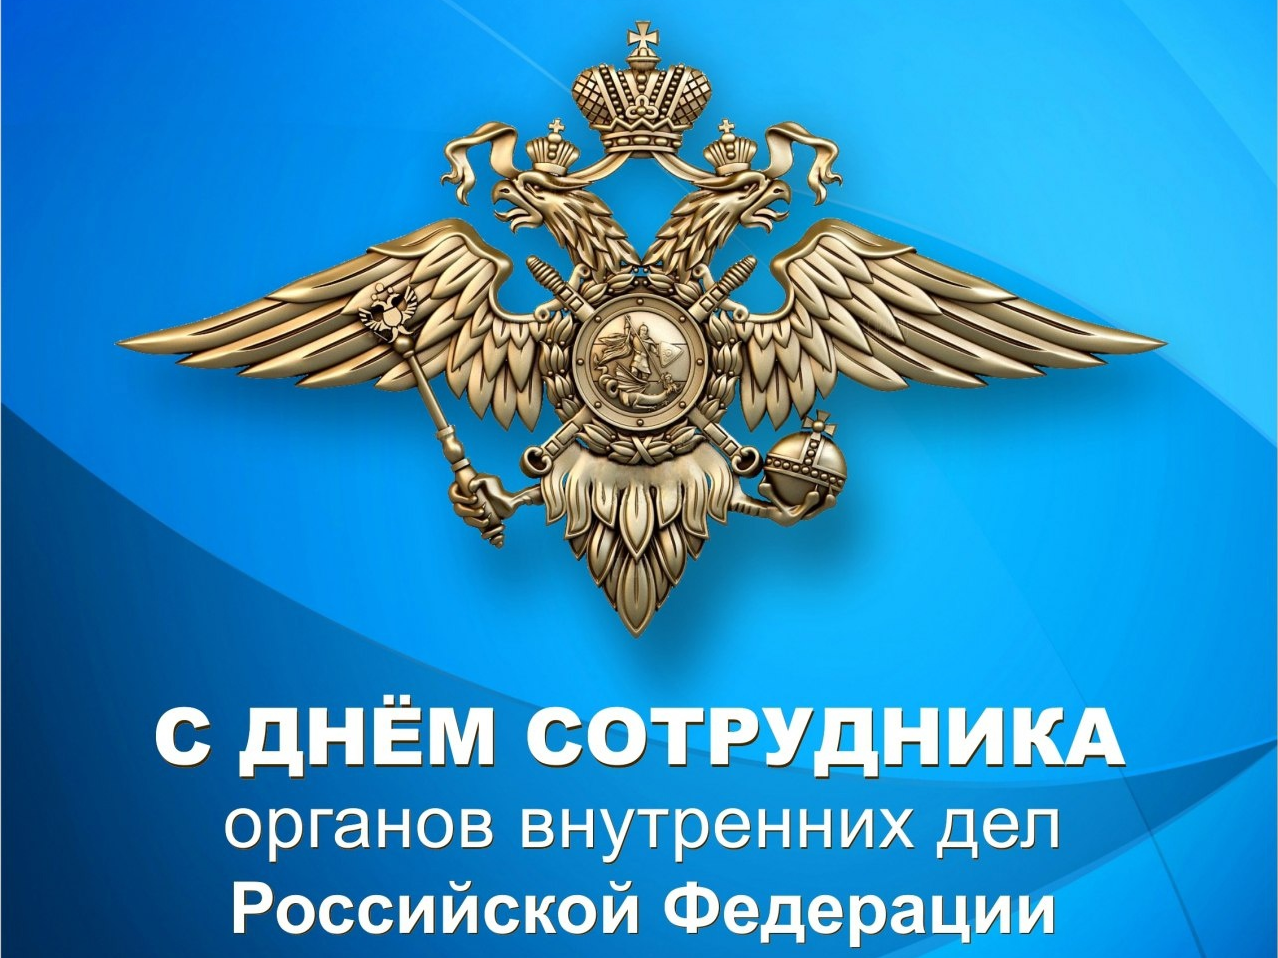 Глава Администрации МО «Тереньгульский район» поздравил с Днем сотрудника органов внутренних дел Российской Федерации.